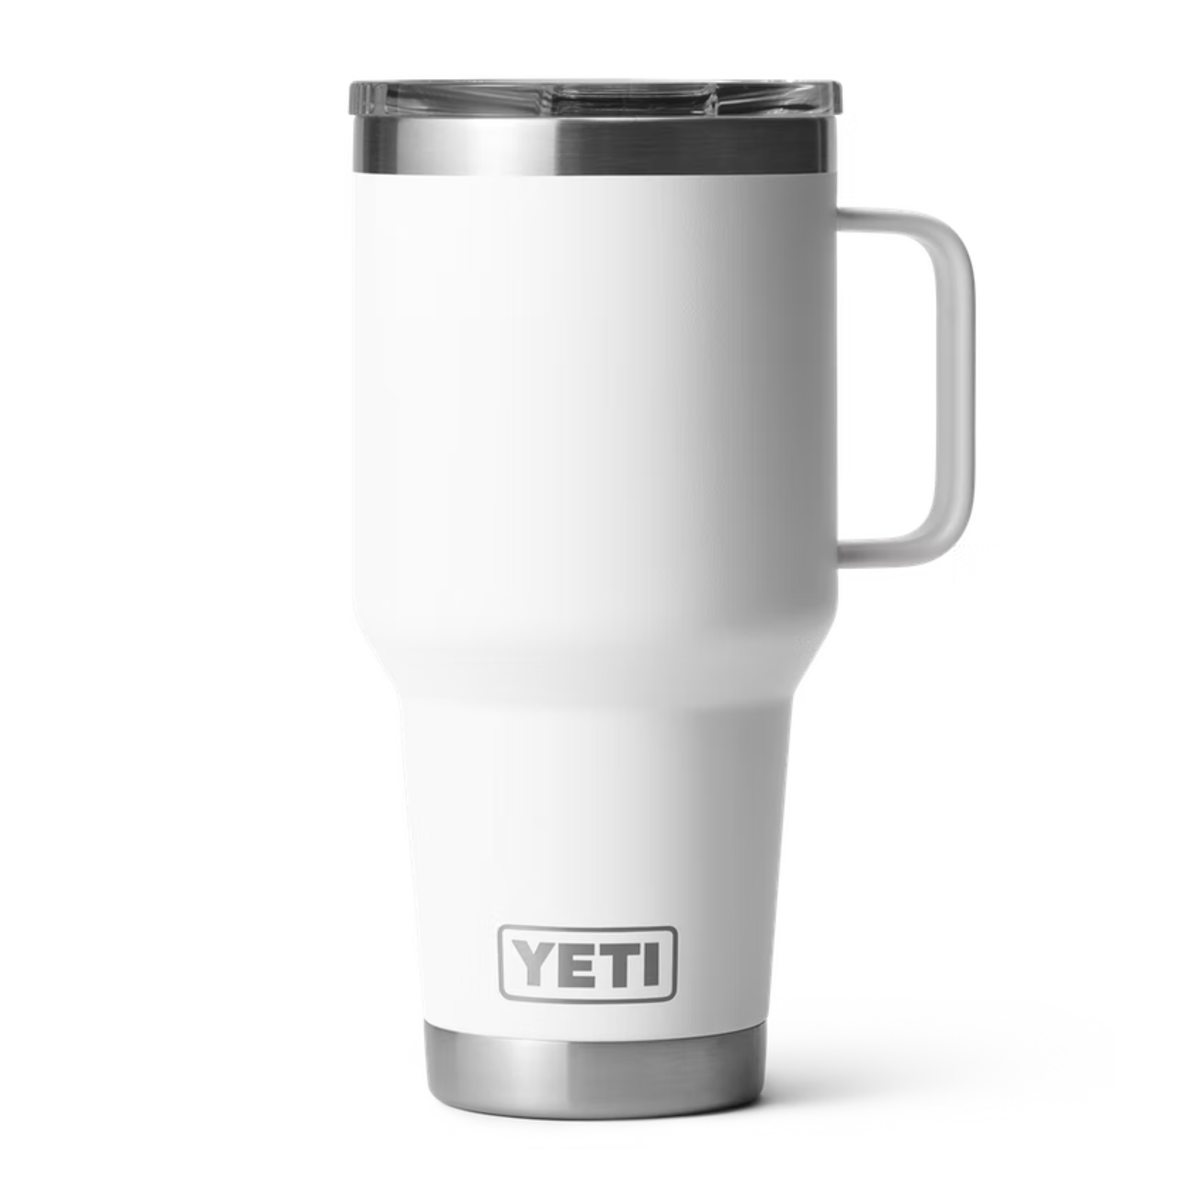 Yeti Rambler 30oz Travel mug in white